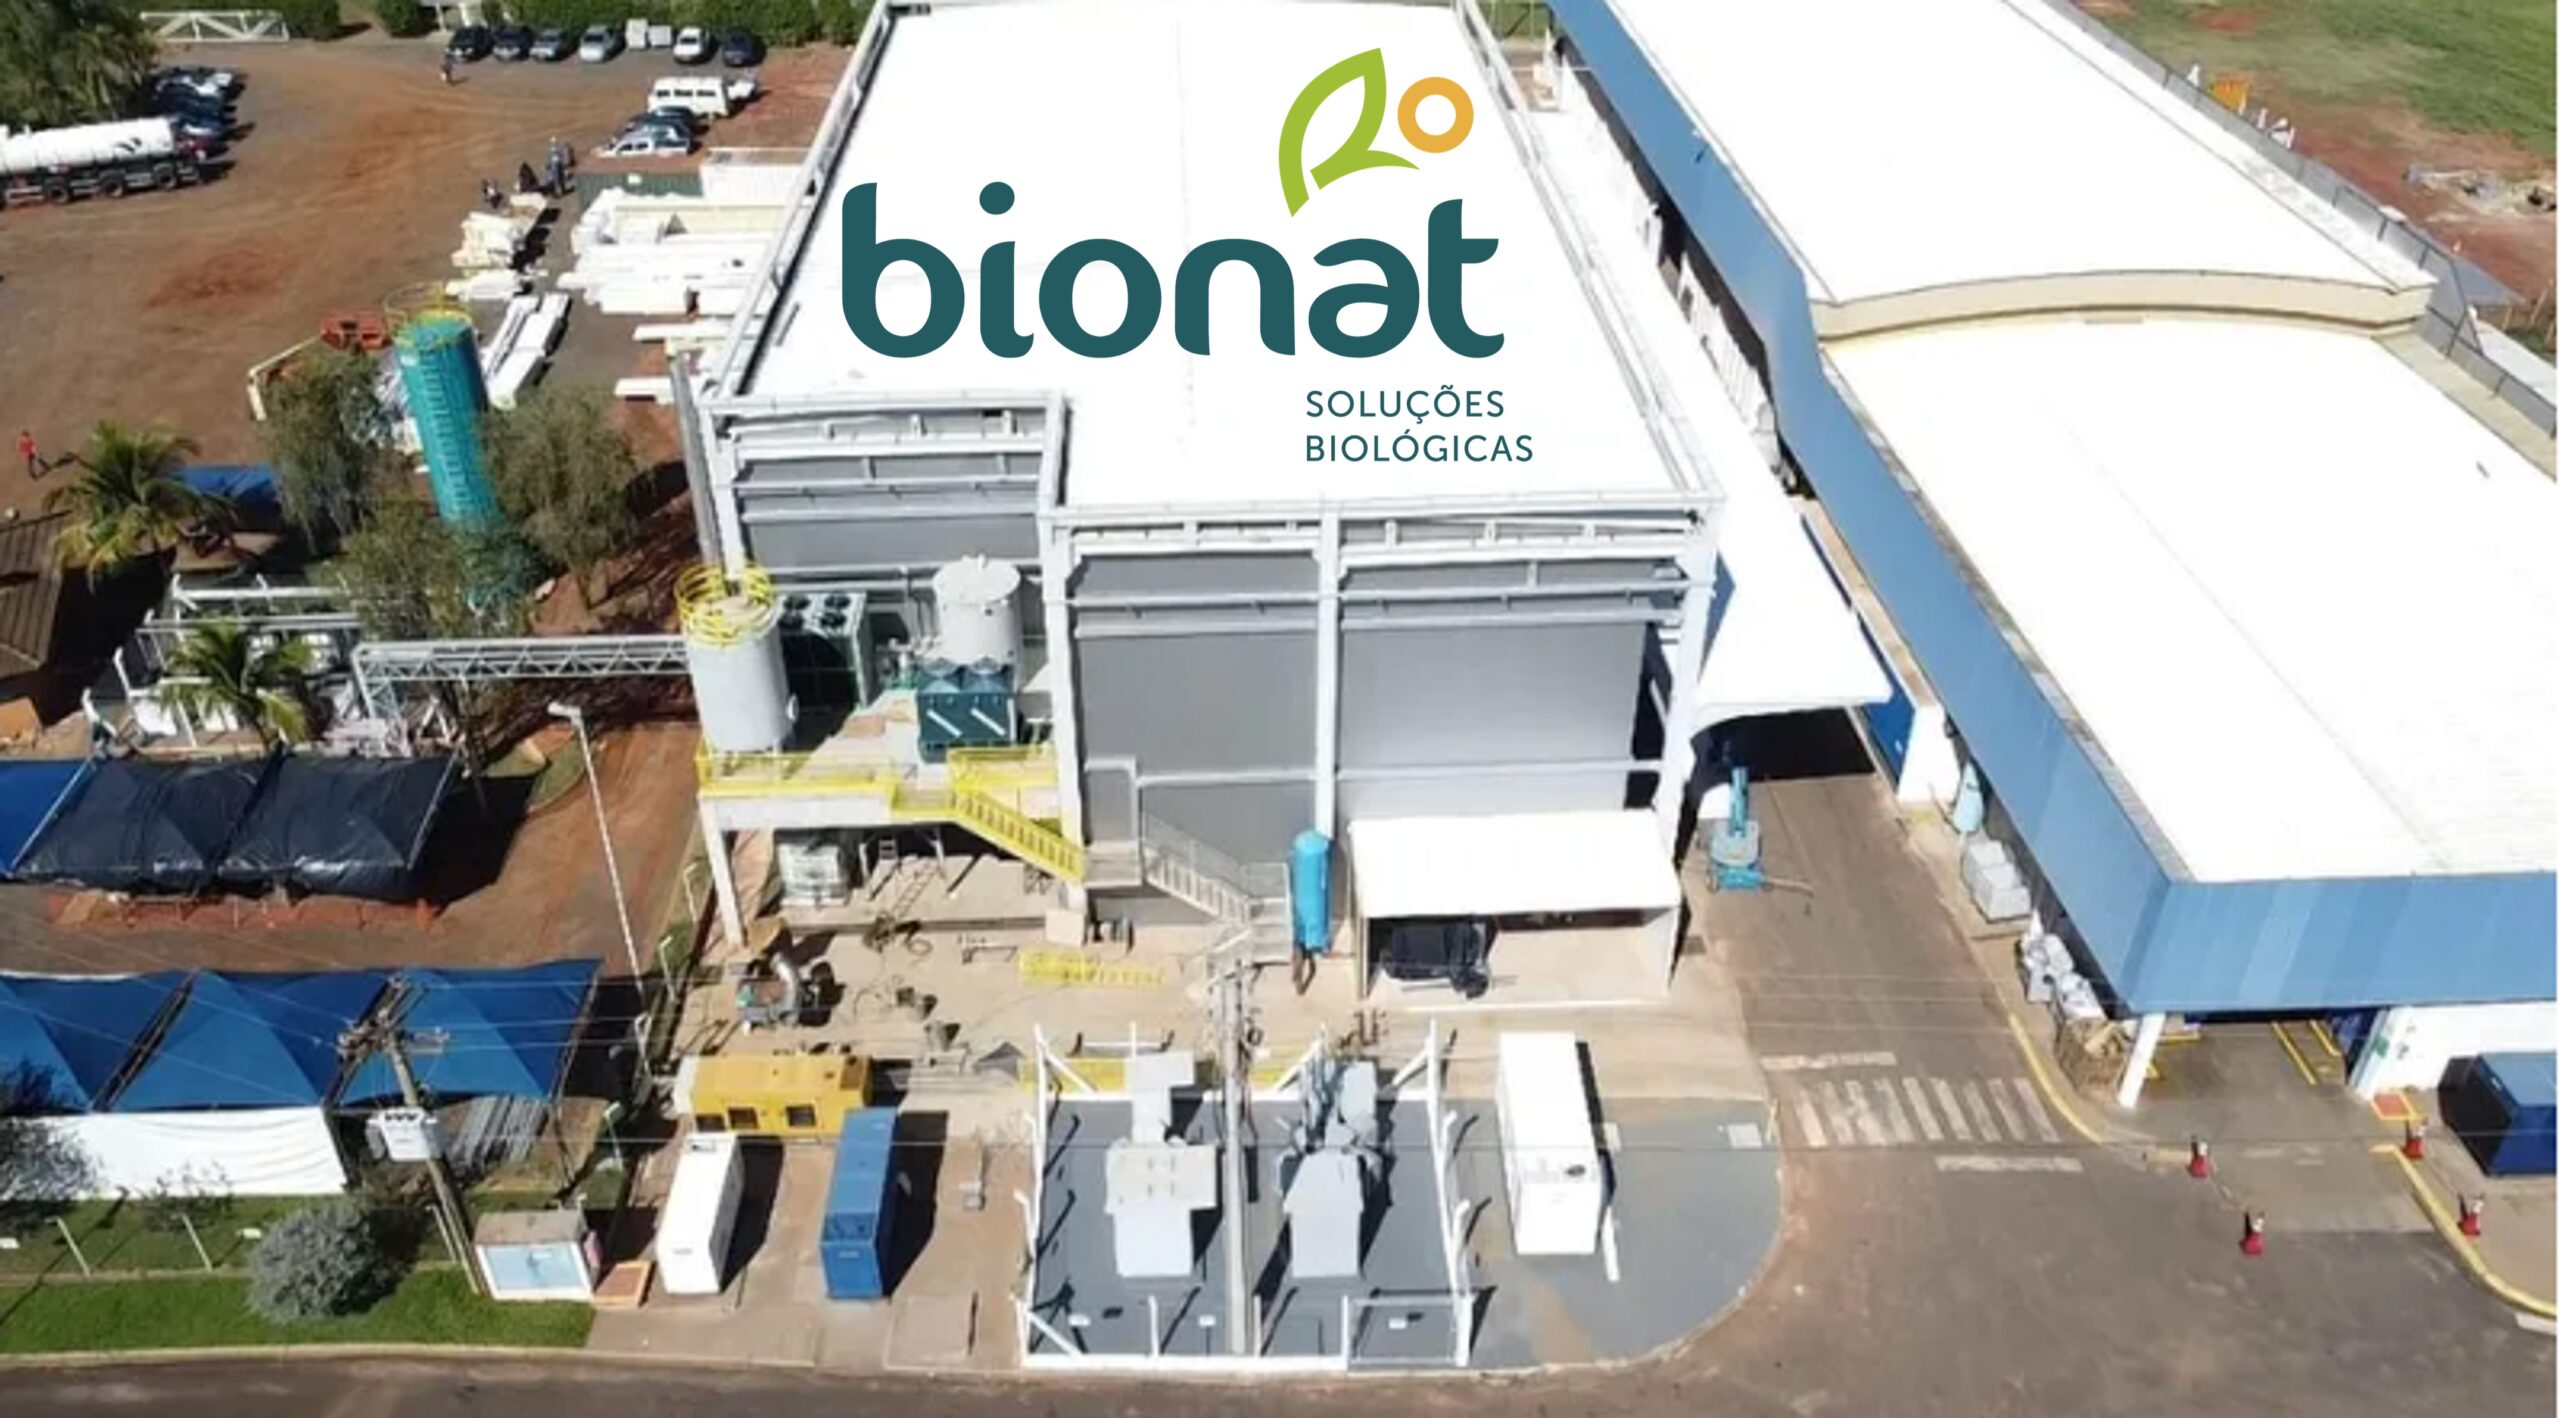 Bionat, de insumos biológicos, planeja expansão após nova fábrica